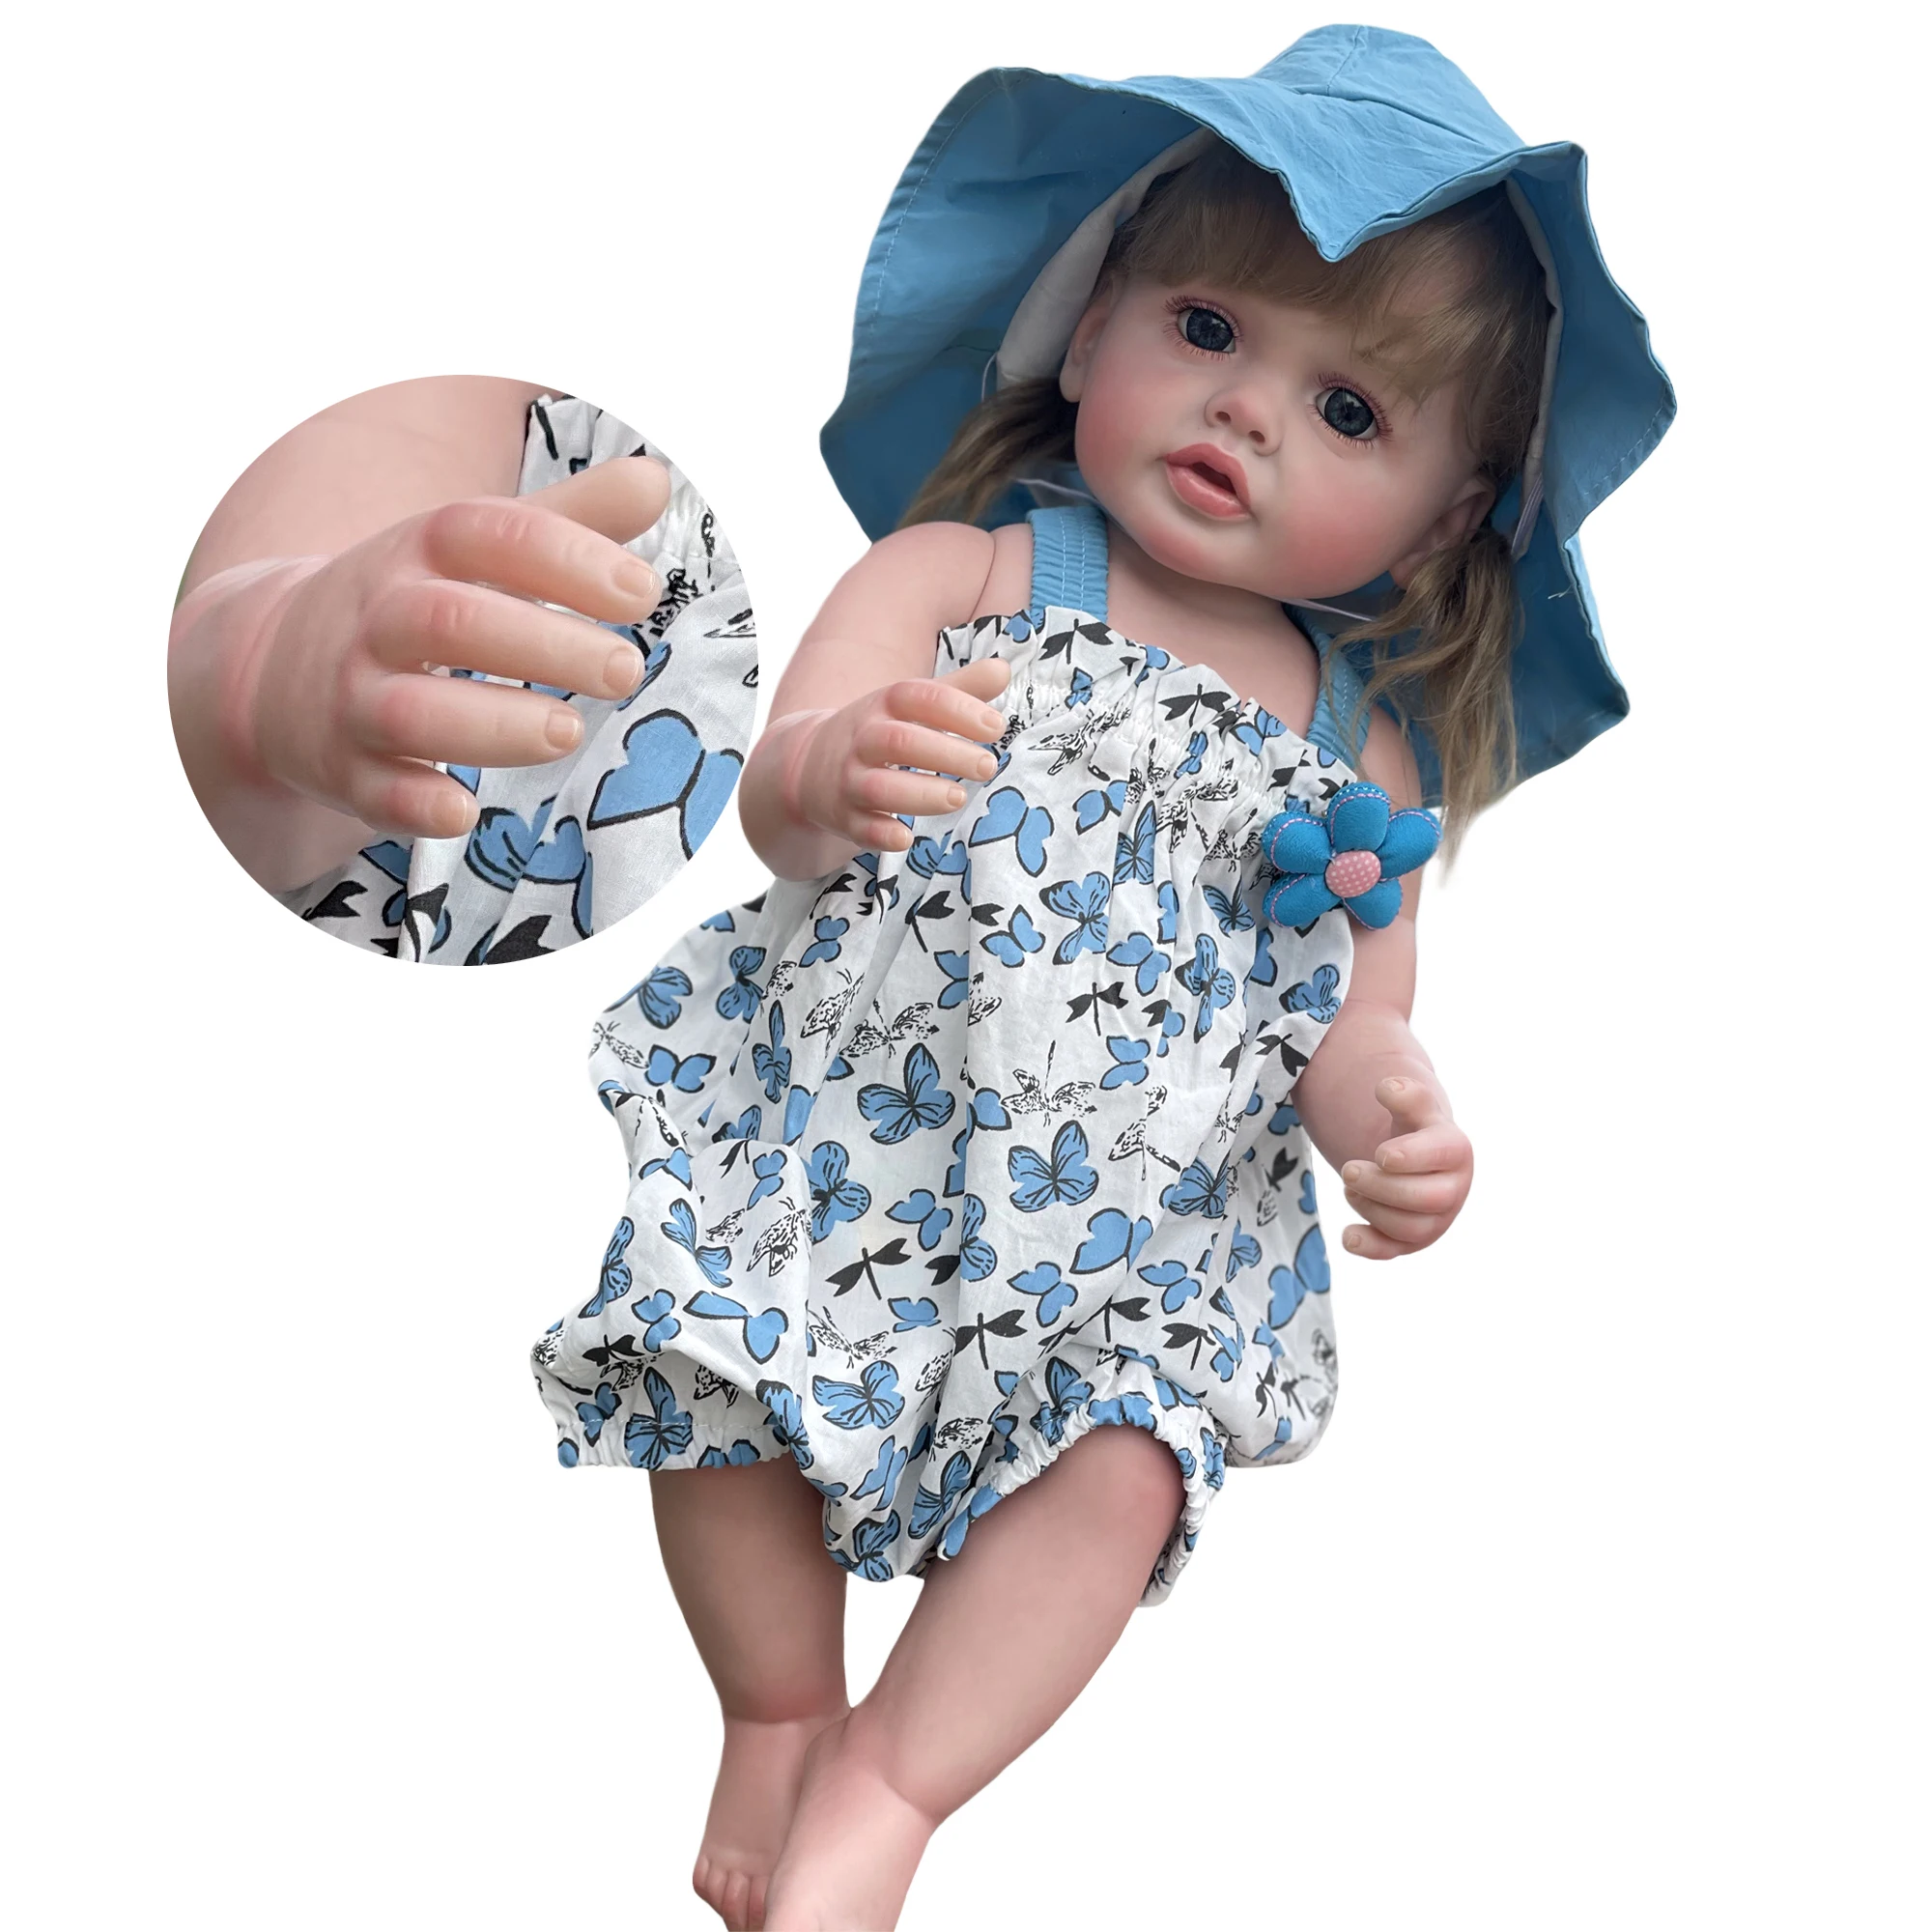 55 cm Bitmiş Betty Bebe Reborn Bebekler 3D Boyalı Görünür Damarlar El Yapımı Gerçekçi Yeniden Doğmuş Bebek Bebek Muñecas Realistasbebes